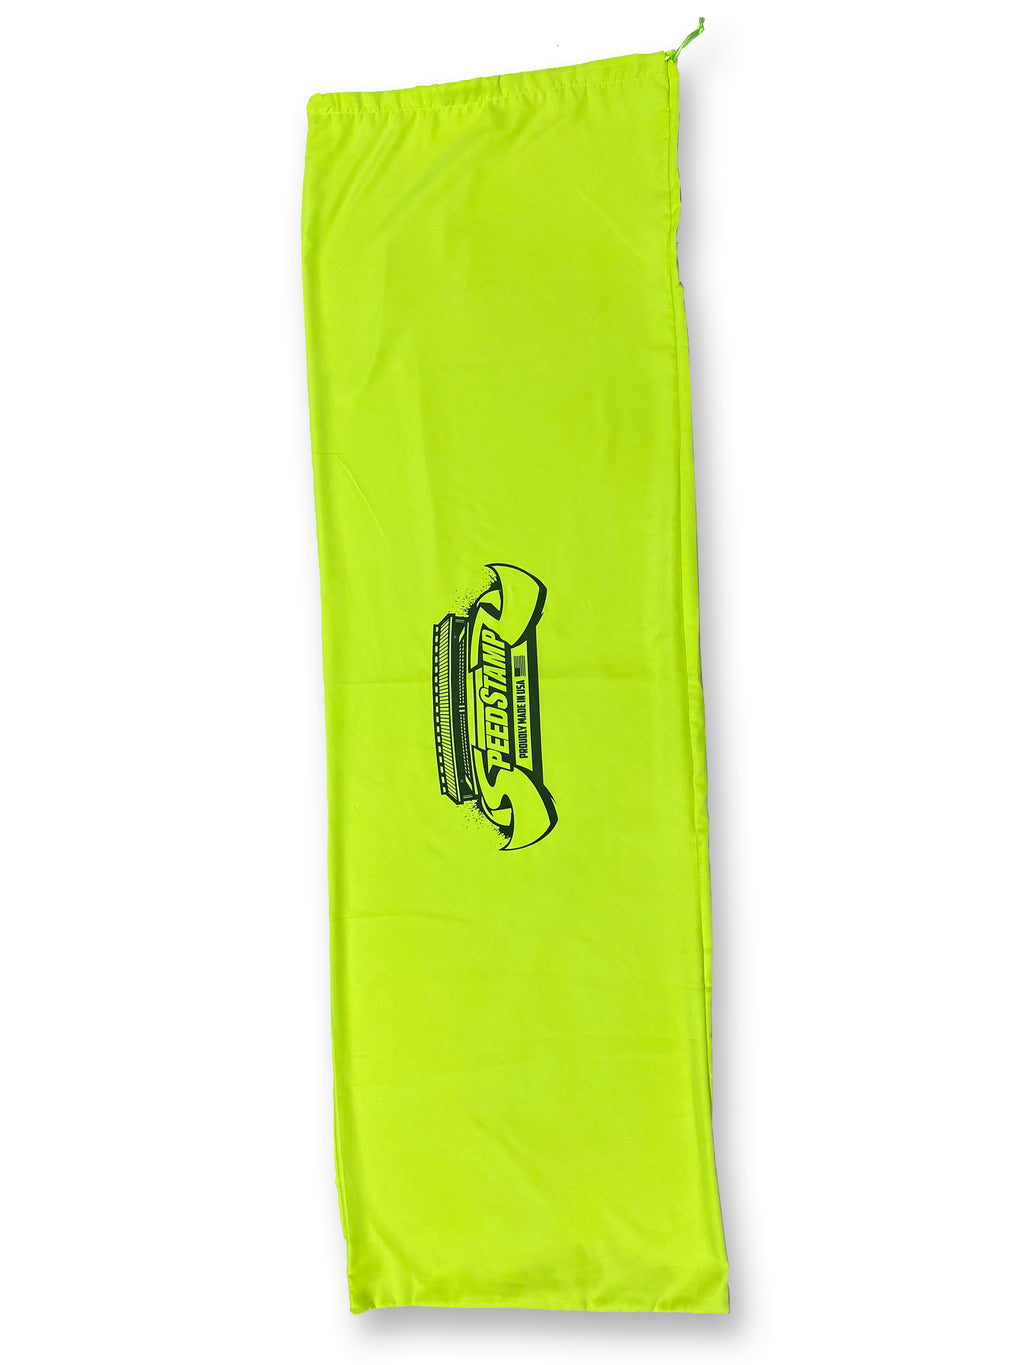 SpeedStampz 48" Neon Yellow Suede/Silk Carry Bag